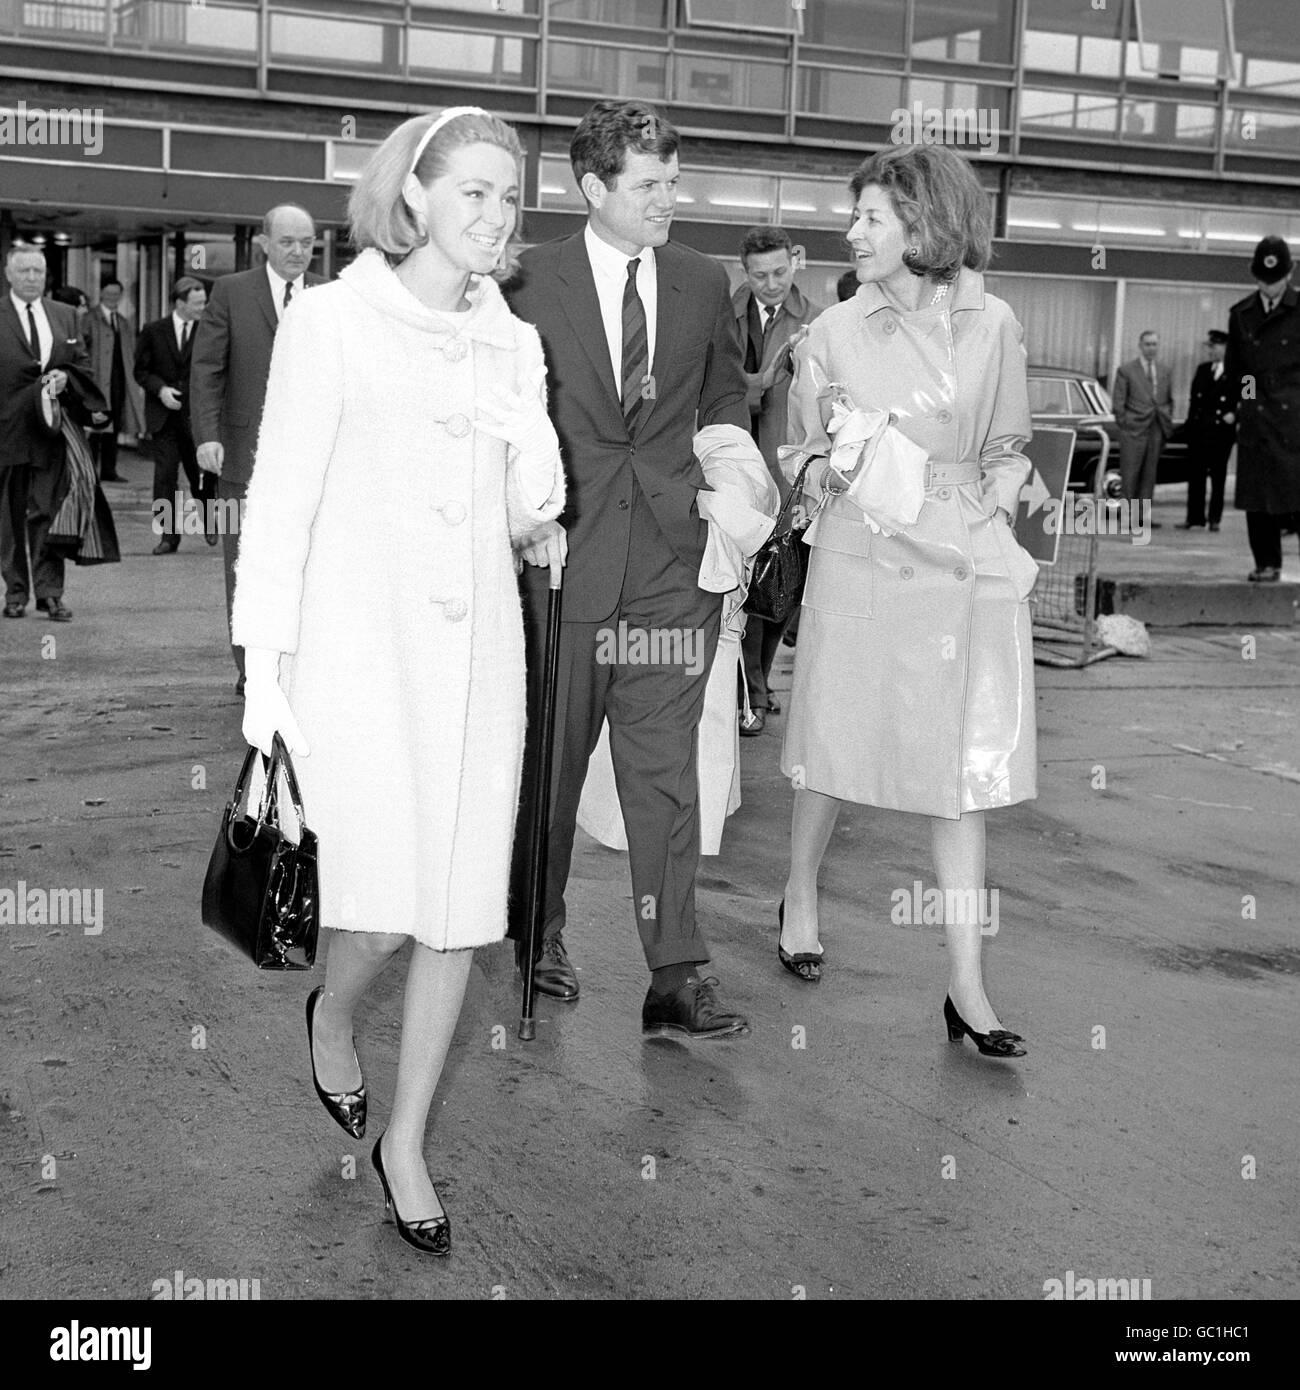 Il senatore Edward Kennedy, fratello del defunto presidente americano, con sua moglie Joan (a sinistra) e sua sorella Patricia Kennedy Lawford, moglie dell'attore Peter Lawford che lascia l'aeroporto di Heathrow per gli Stati Uniti. Partivano dopo aver partecipato all'inaugurazione del Runnymede Memorial a John F Kennedy. Foto Stock